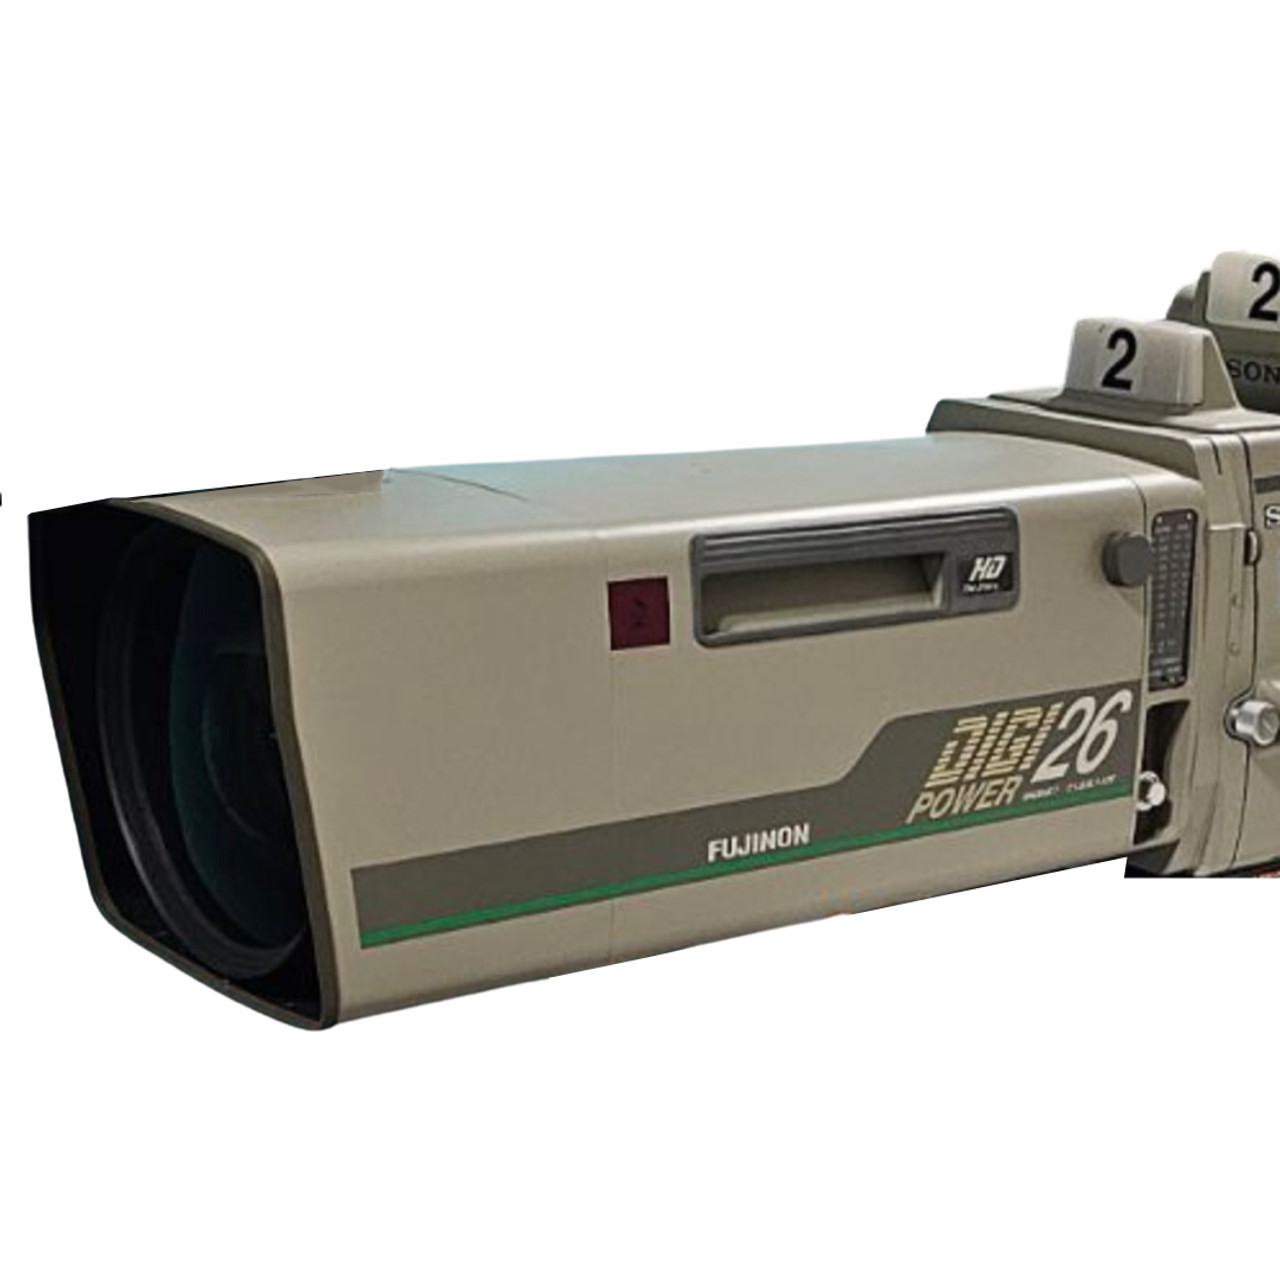 Fujinon HA26x6.7BESM-E18 Digi 26 Studio Lens with Controls